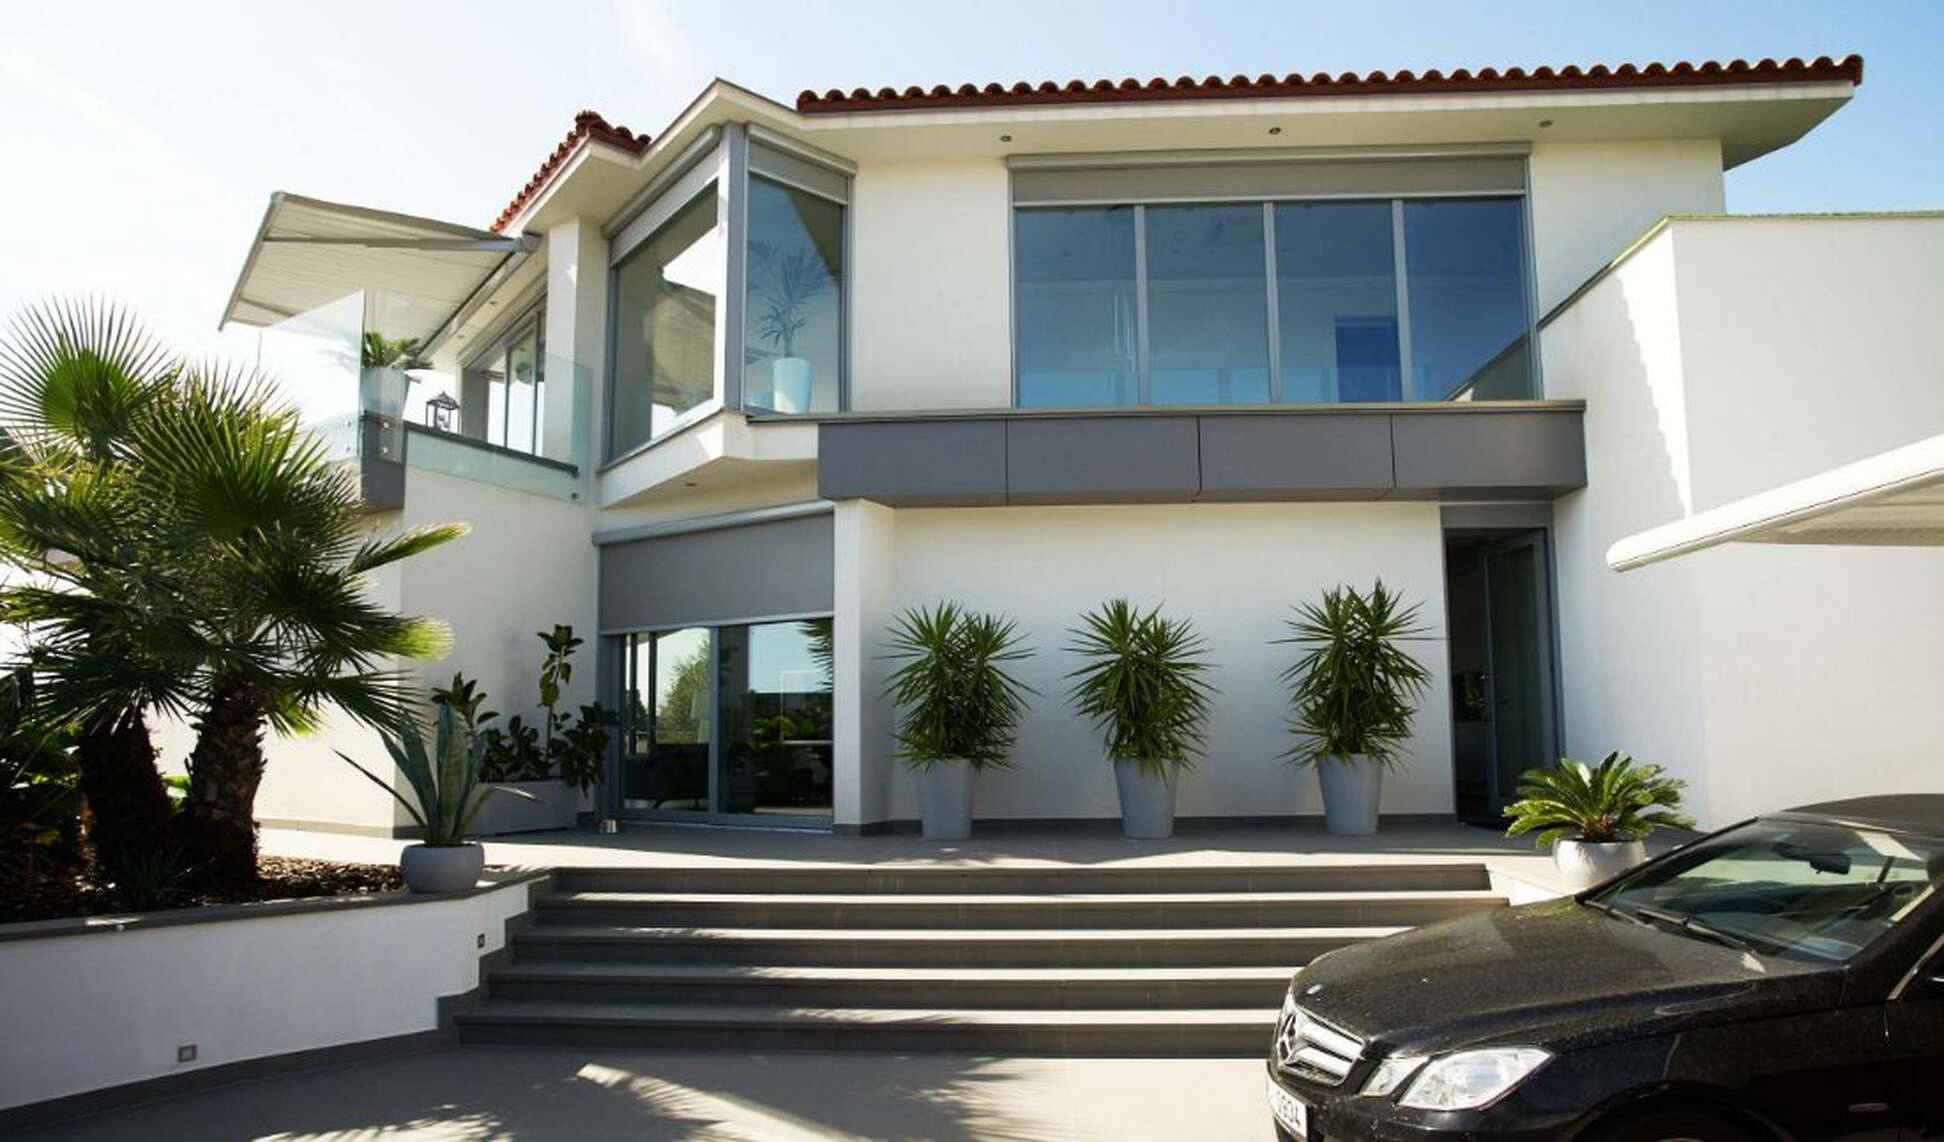 Exclusiva casa con impresionantes vistas al mar en Tossa de Mar, disponible ahora.